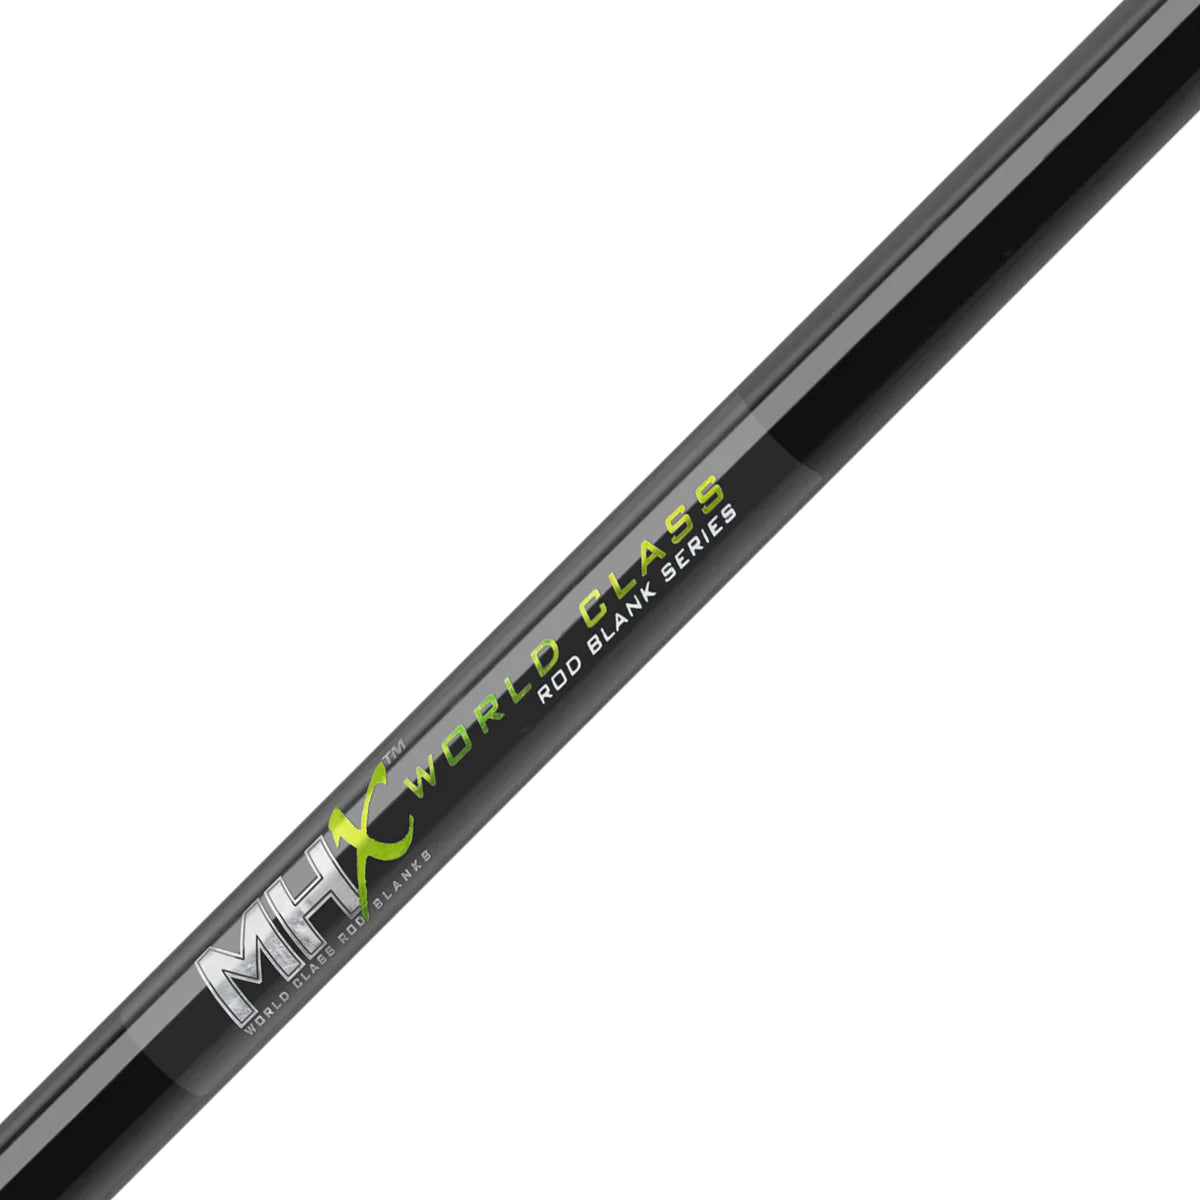 MHX X-Composite Rod Blanks